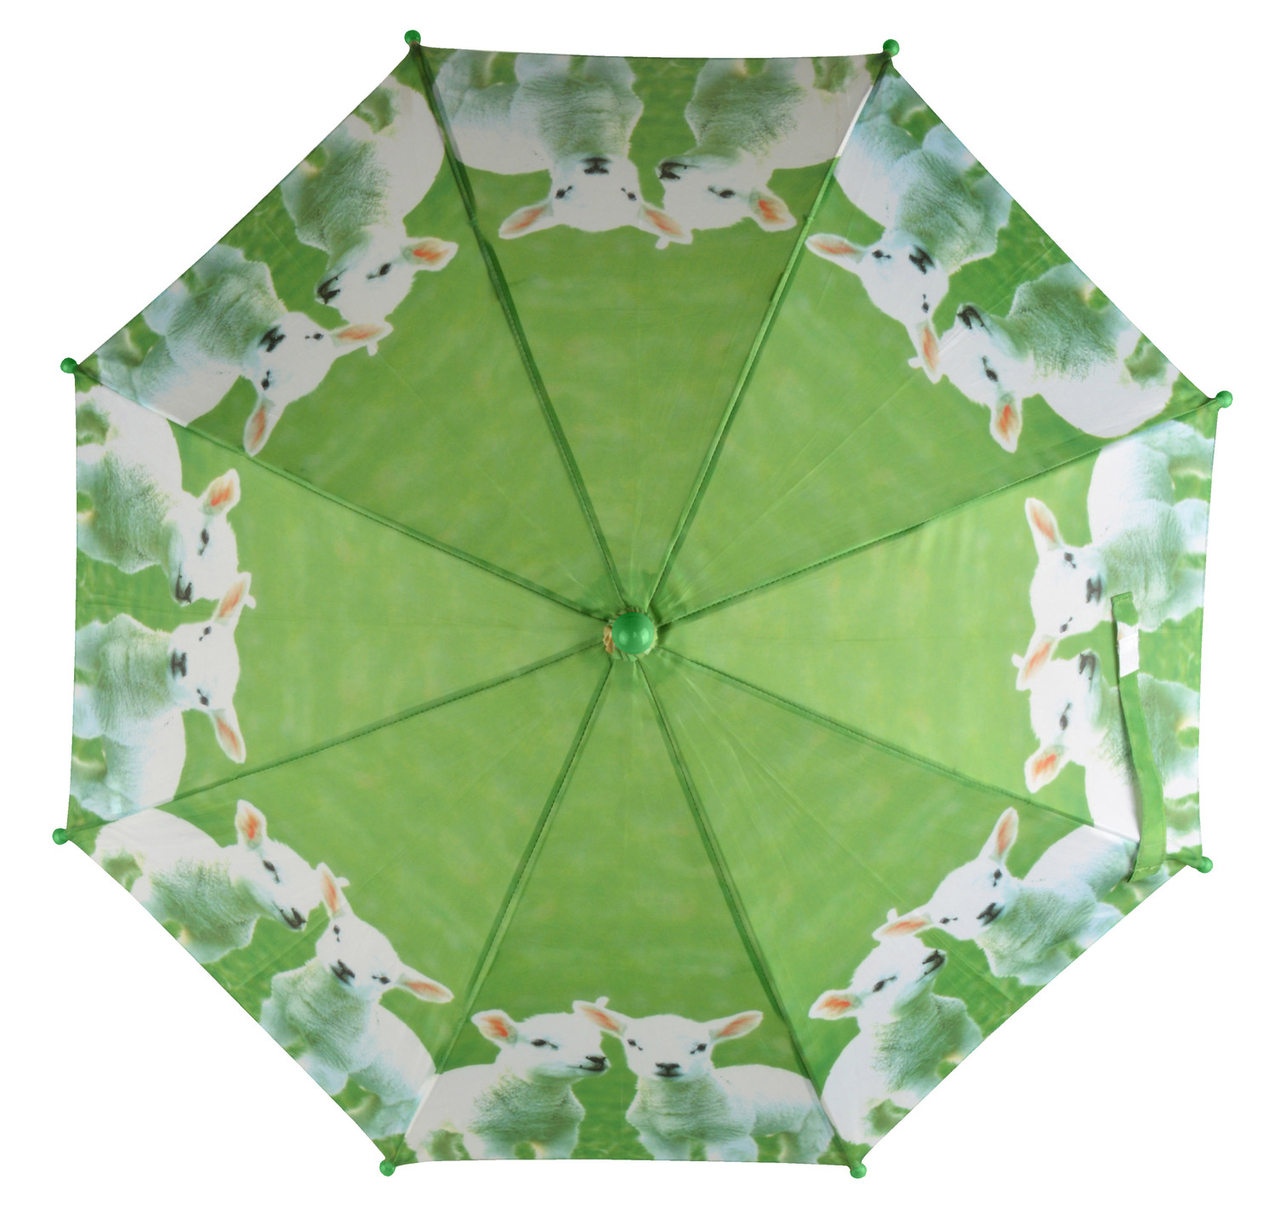 Bestellen Kinderregenschirm Lämmer Online - Regenschirme